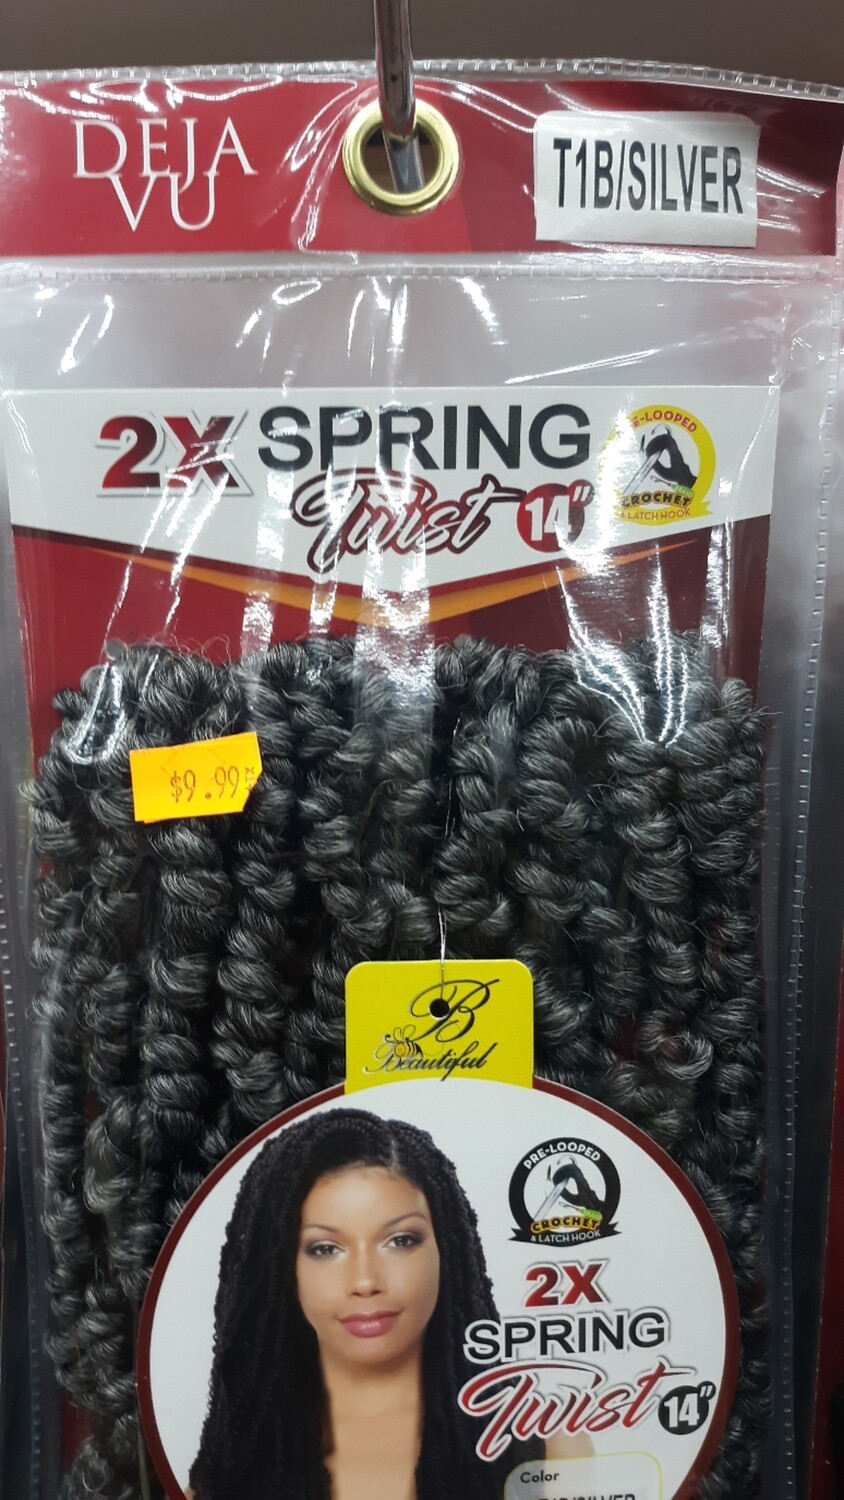 Deja Vu 2x Spring Twist Crochet 14" (T1B/SILVER)